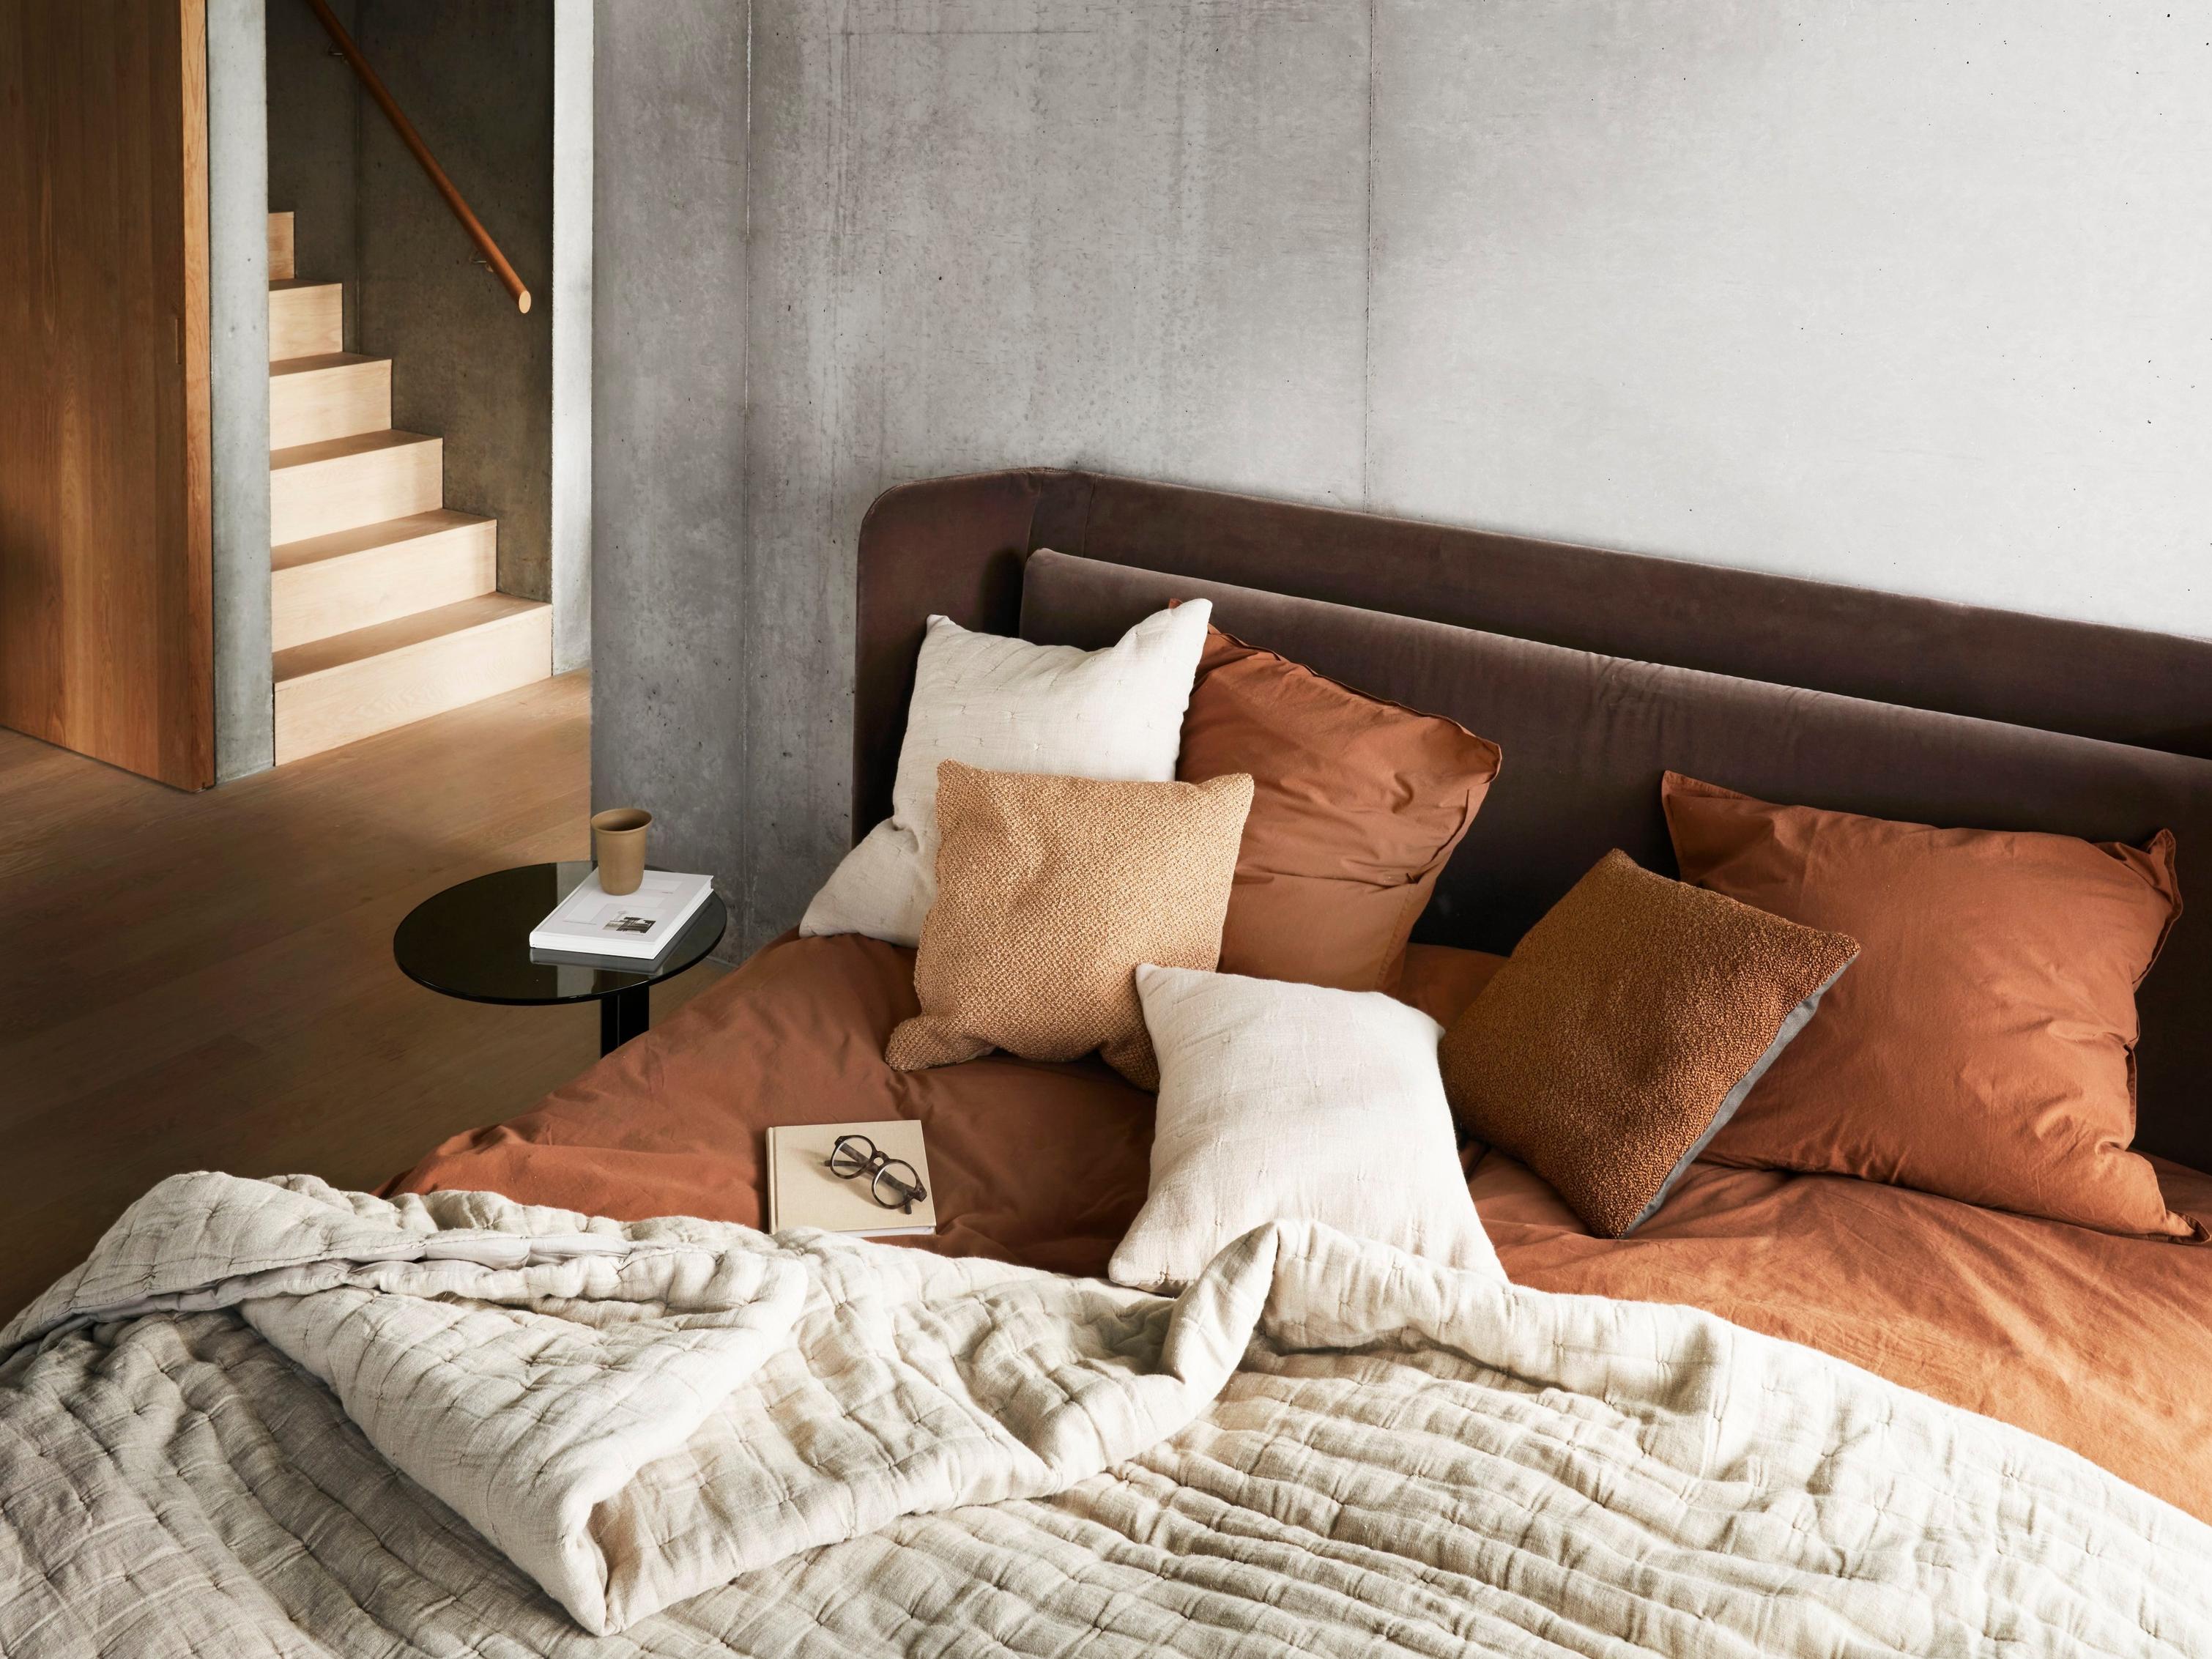 Modernes Schlafzimmer mit weicher Bettwäsche in neutralen Farbtönen und einem kleinen Beistelltisch.